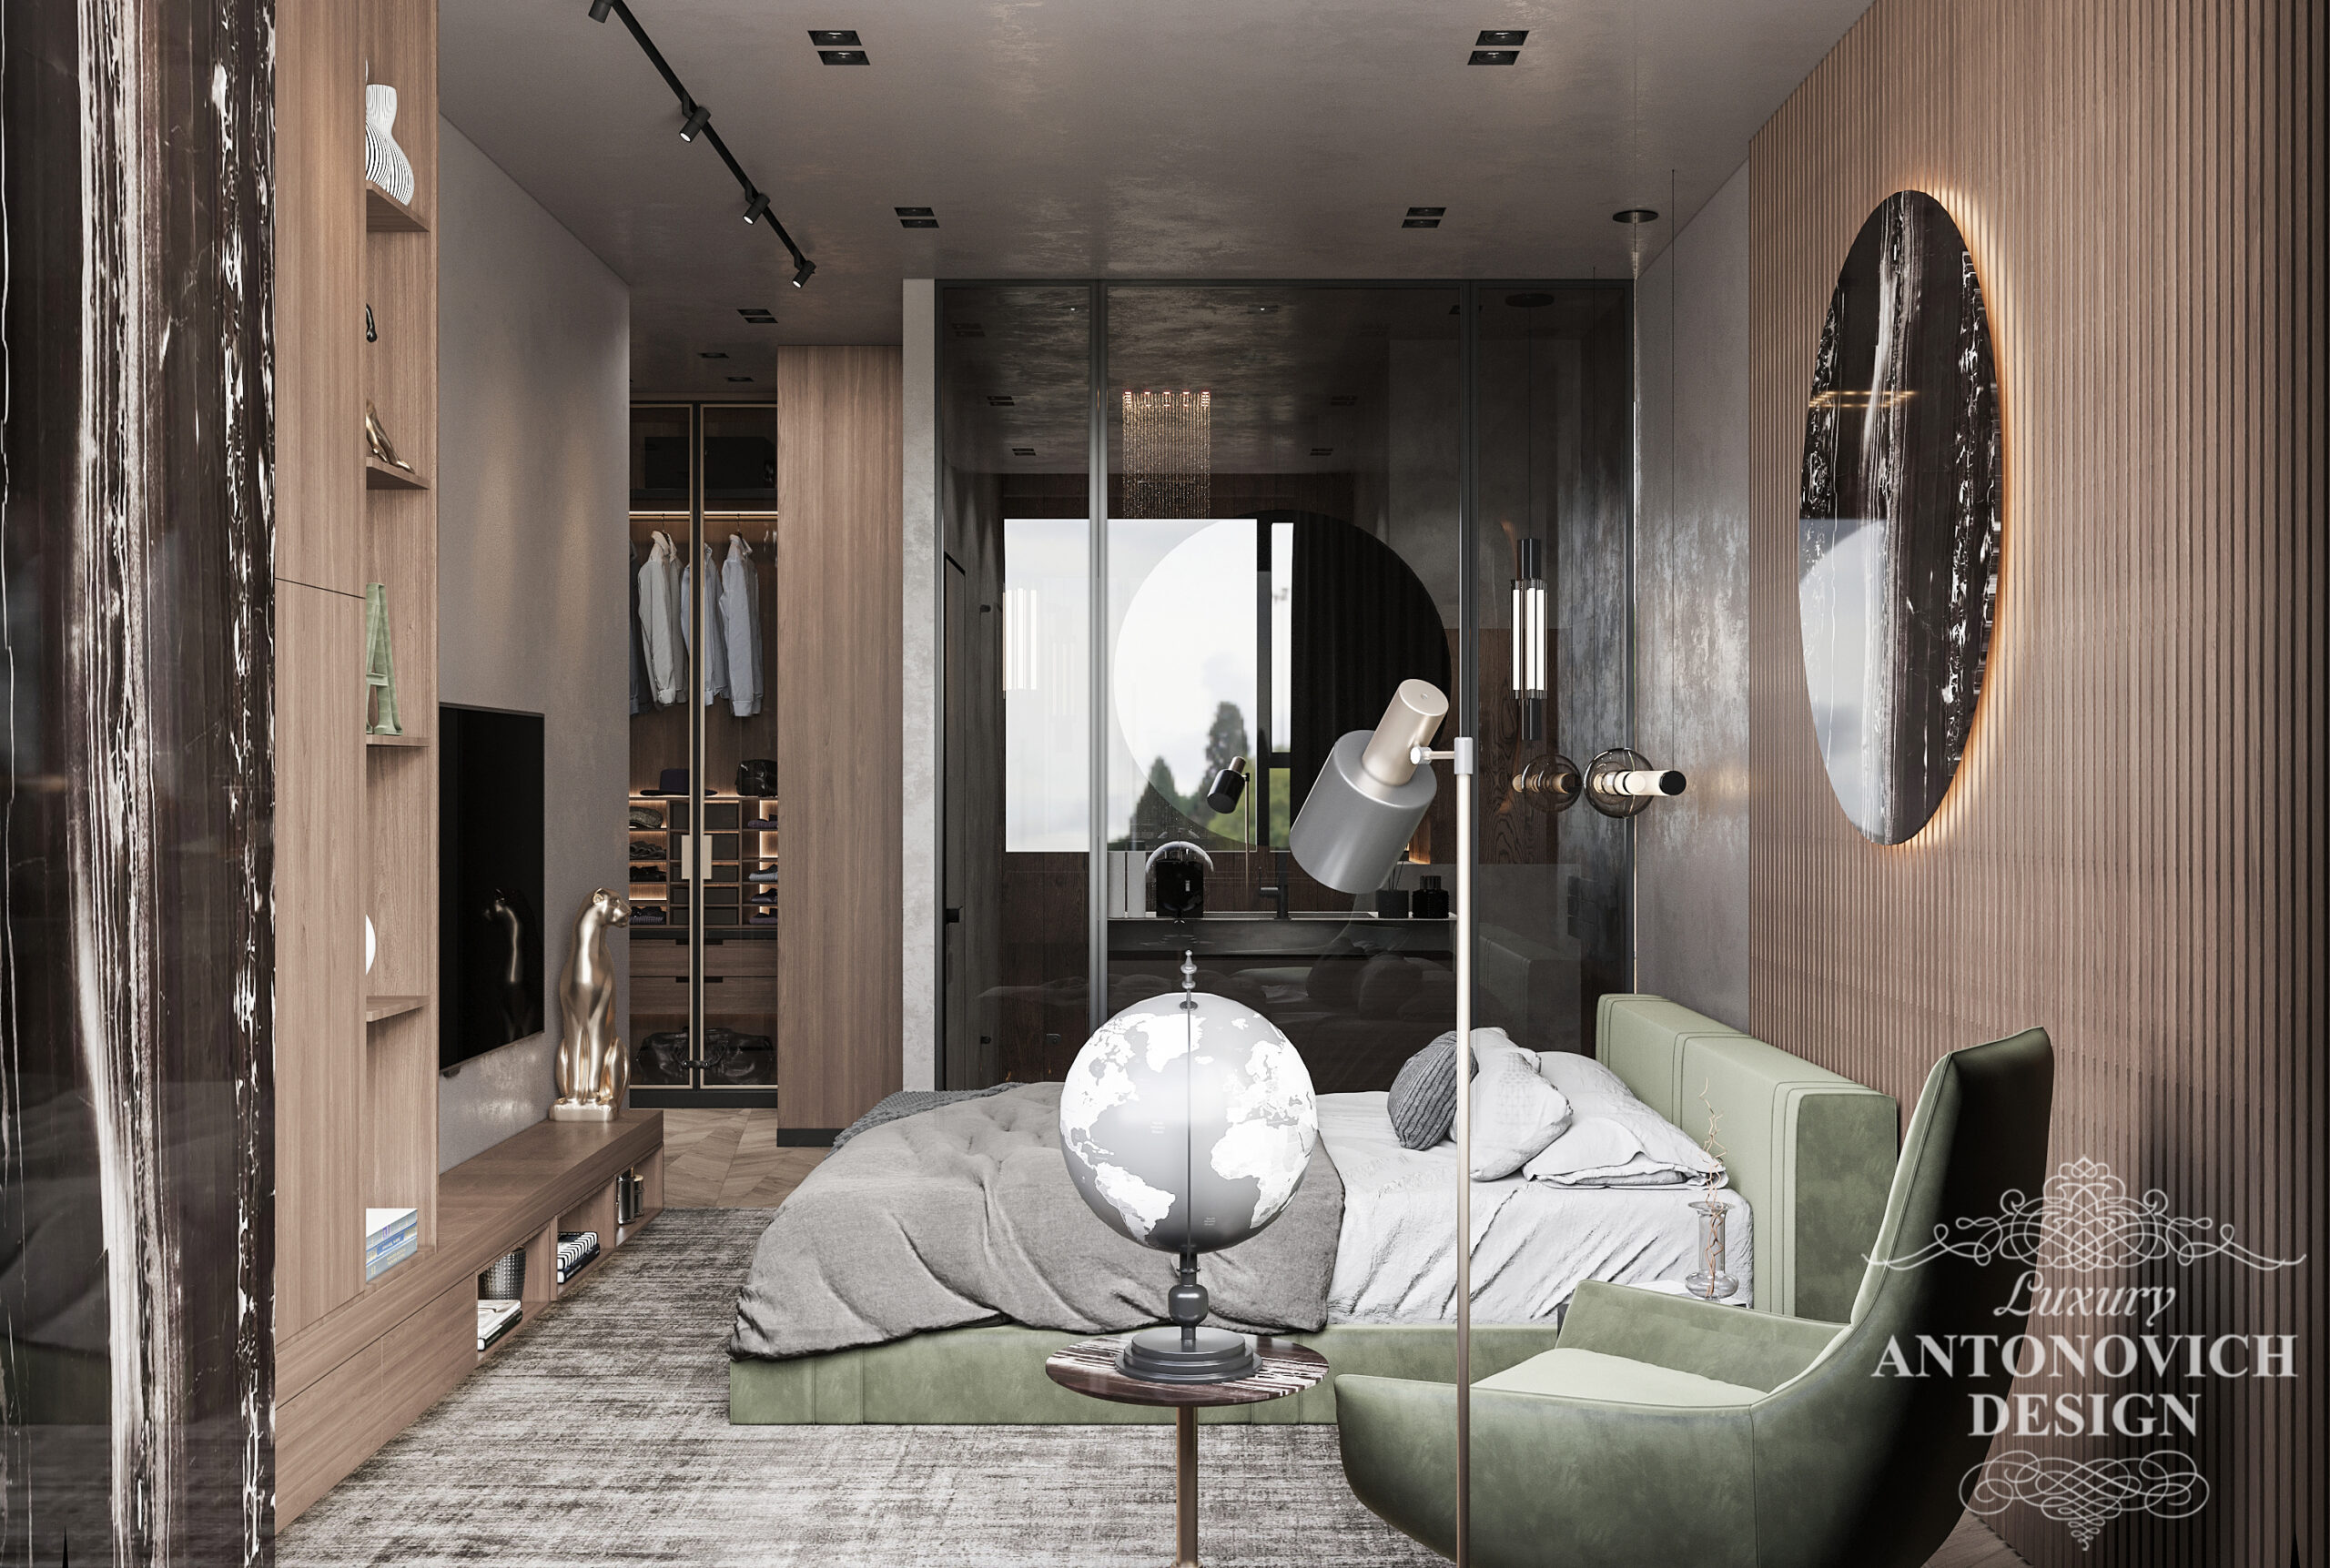 Трендовый декор в интерьере спальни. Спальня для мужчины в монохромной палитре оттенков в проекте современной квартиры.